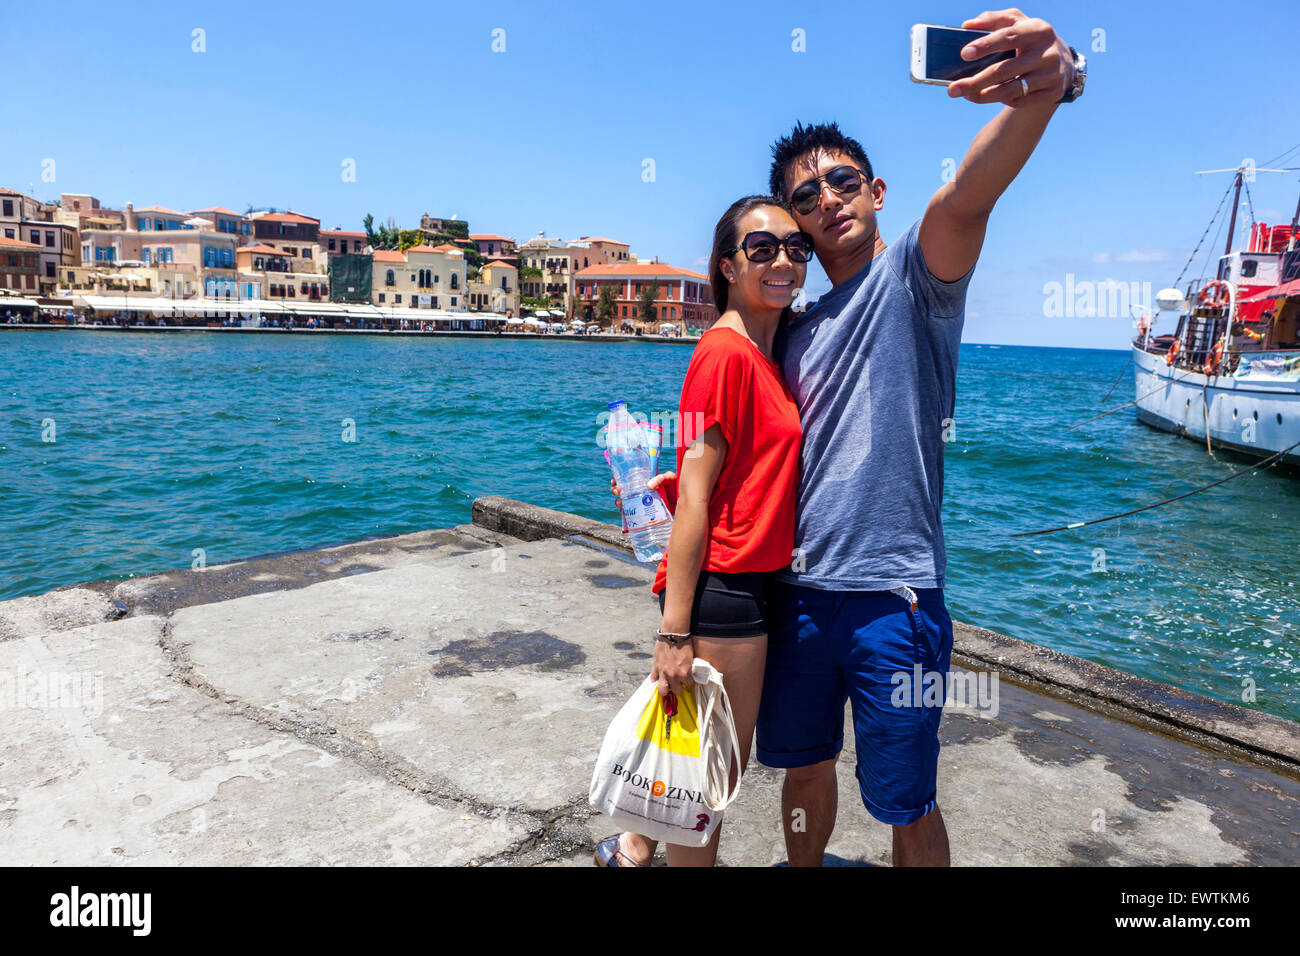 Touristen nehmen Selfie auf Smartphone Handy Handy Snapshot Junges Paar glückliche Menschen Mann Frau Alte venezianische Hafen Chania Kreta Griechenland Europa Tourismus Stockfoto